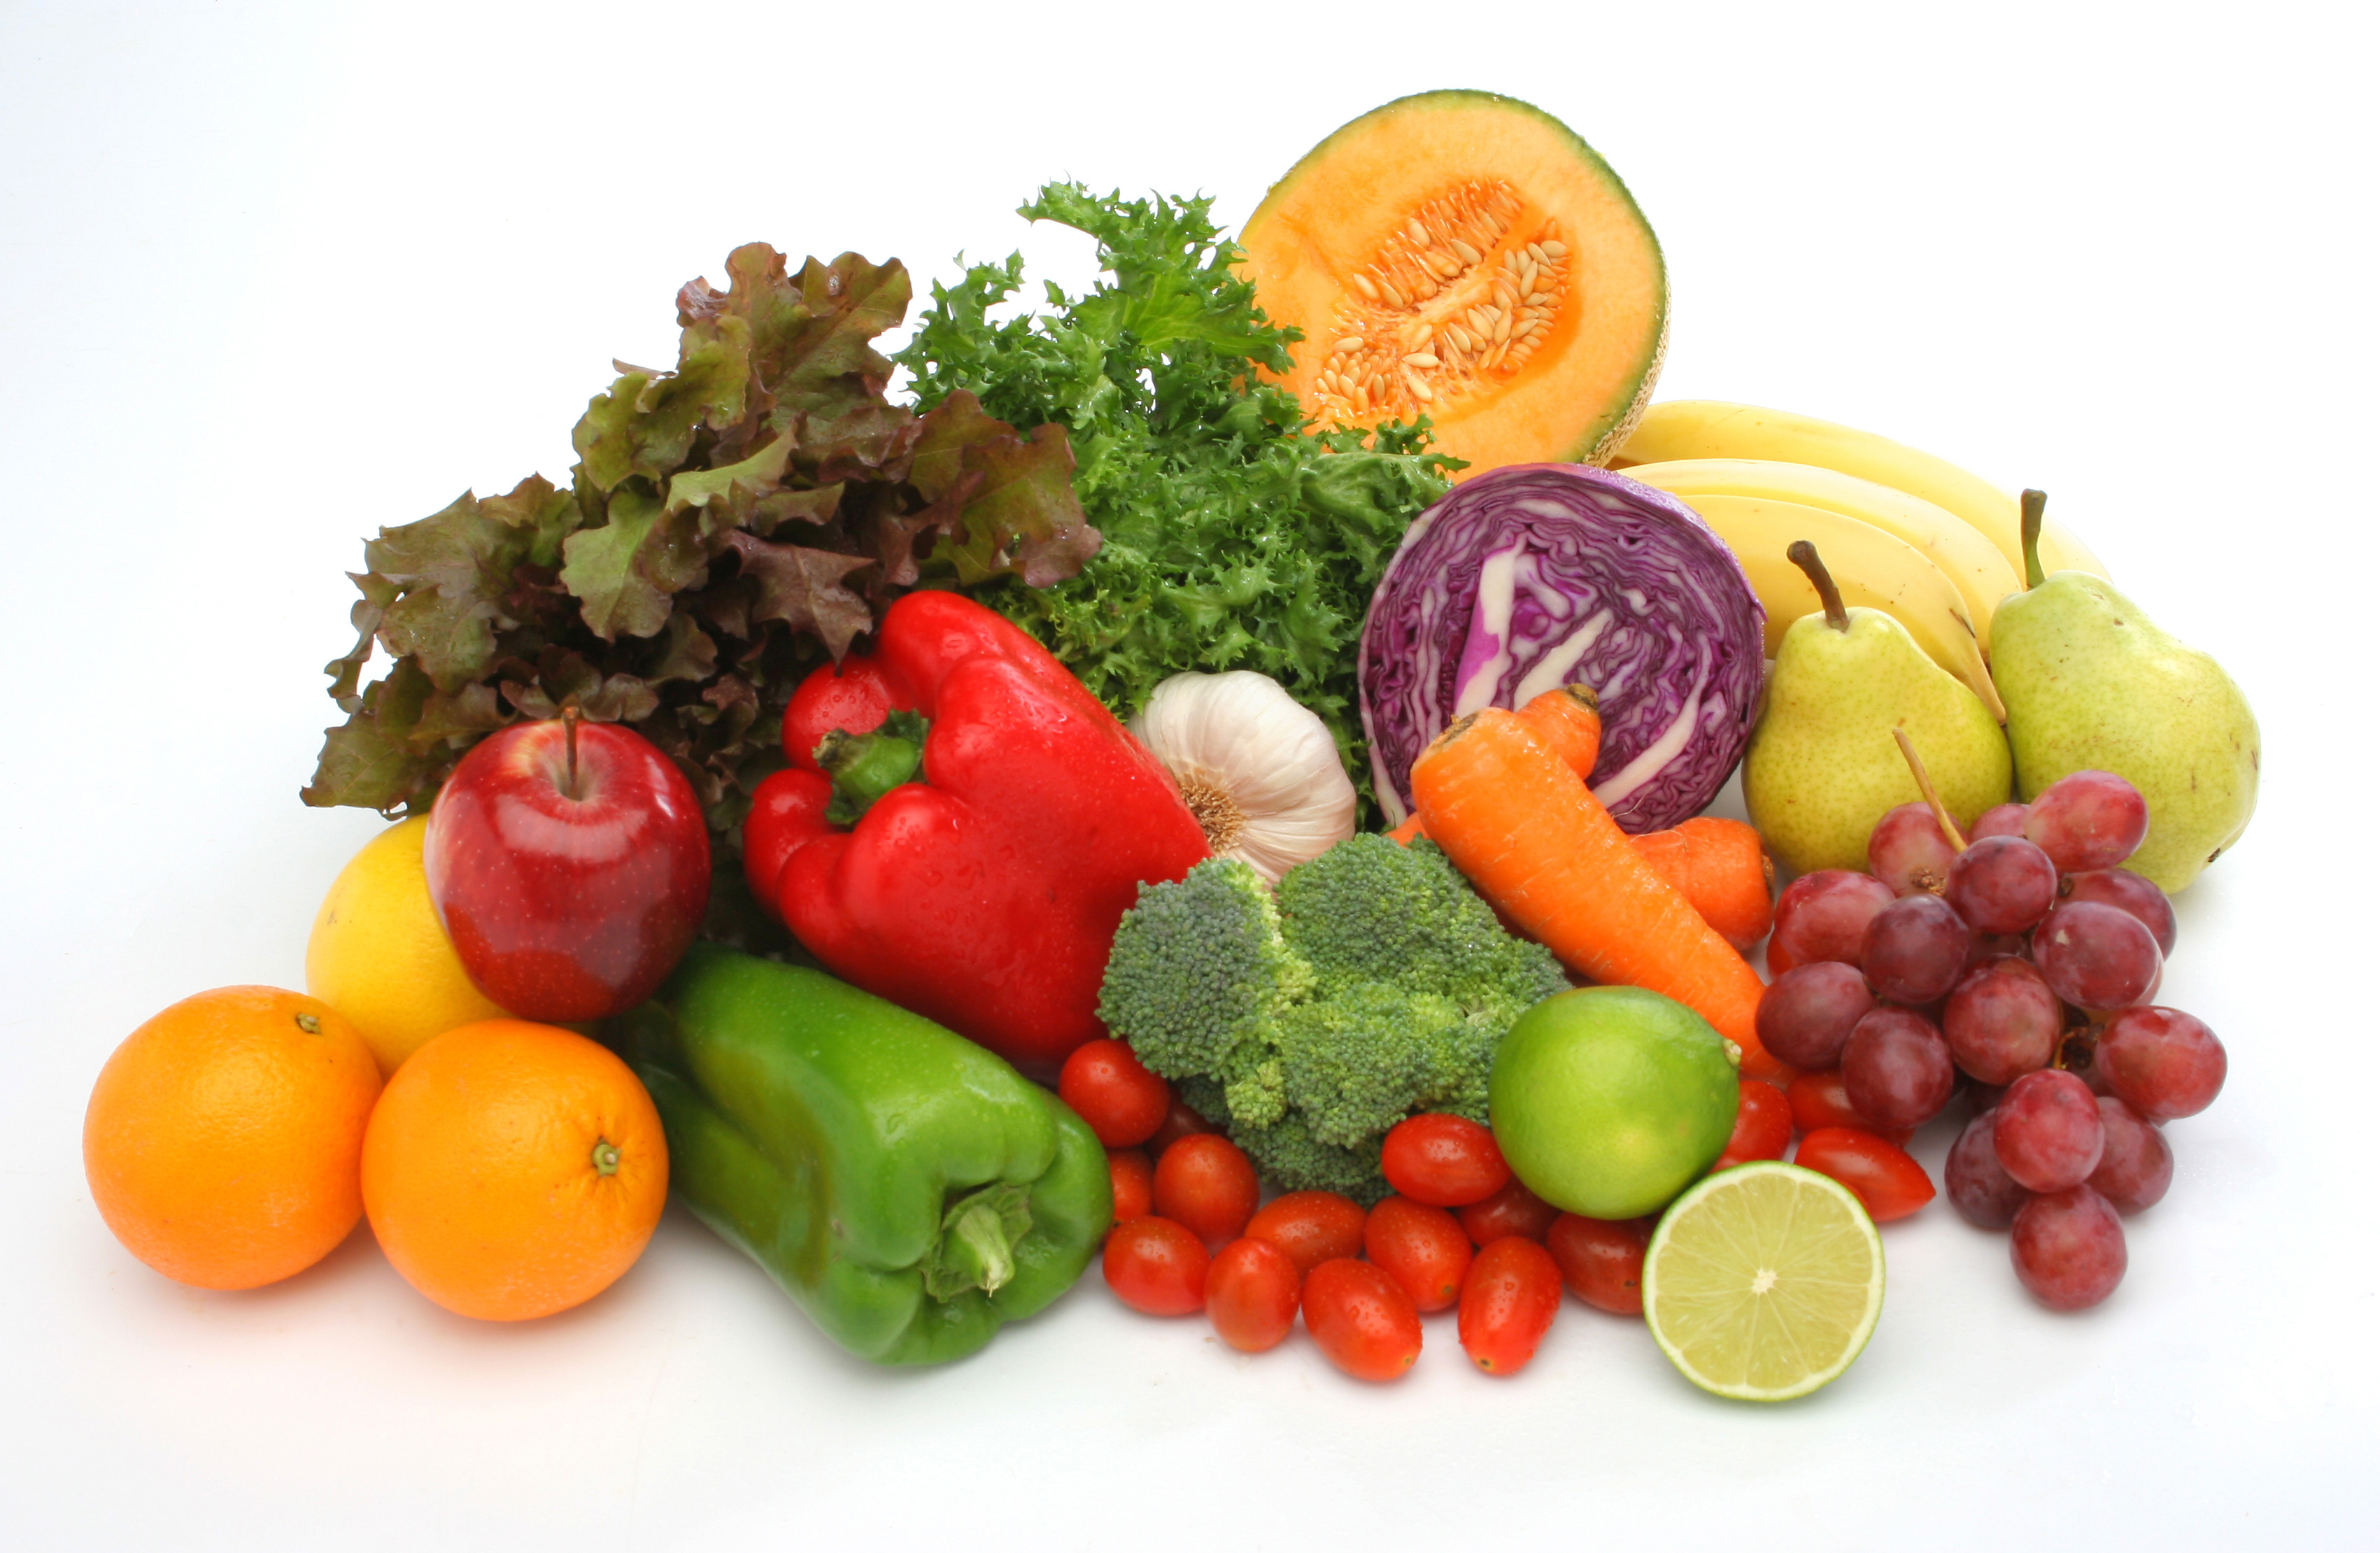 Fruits & Vegetables #8